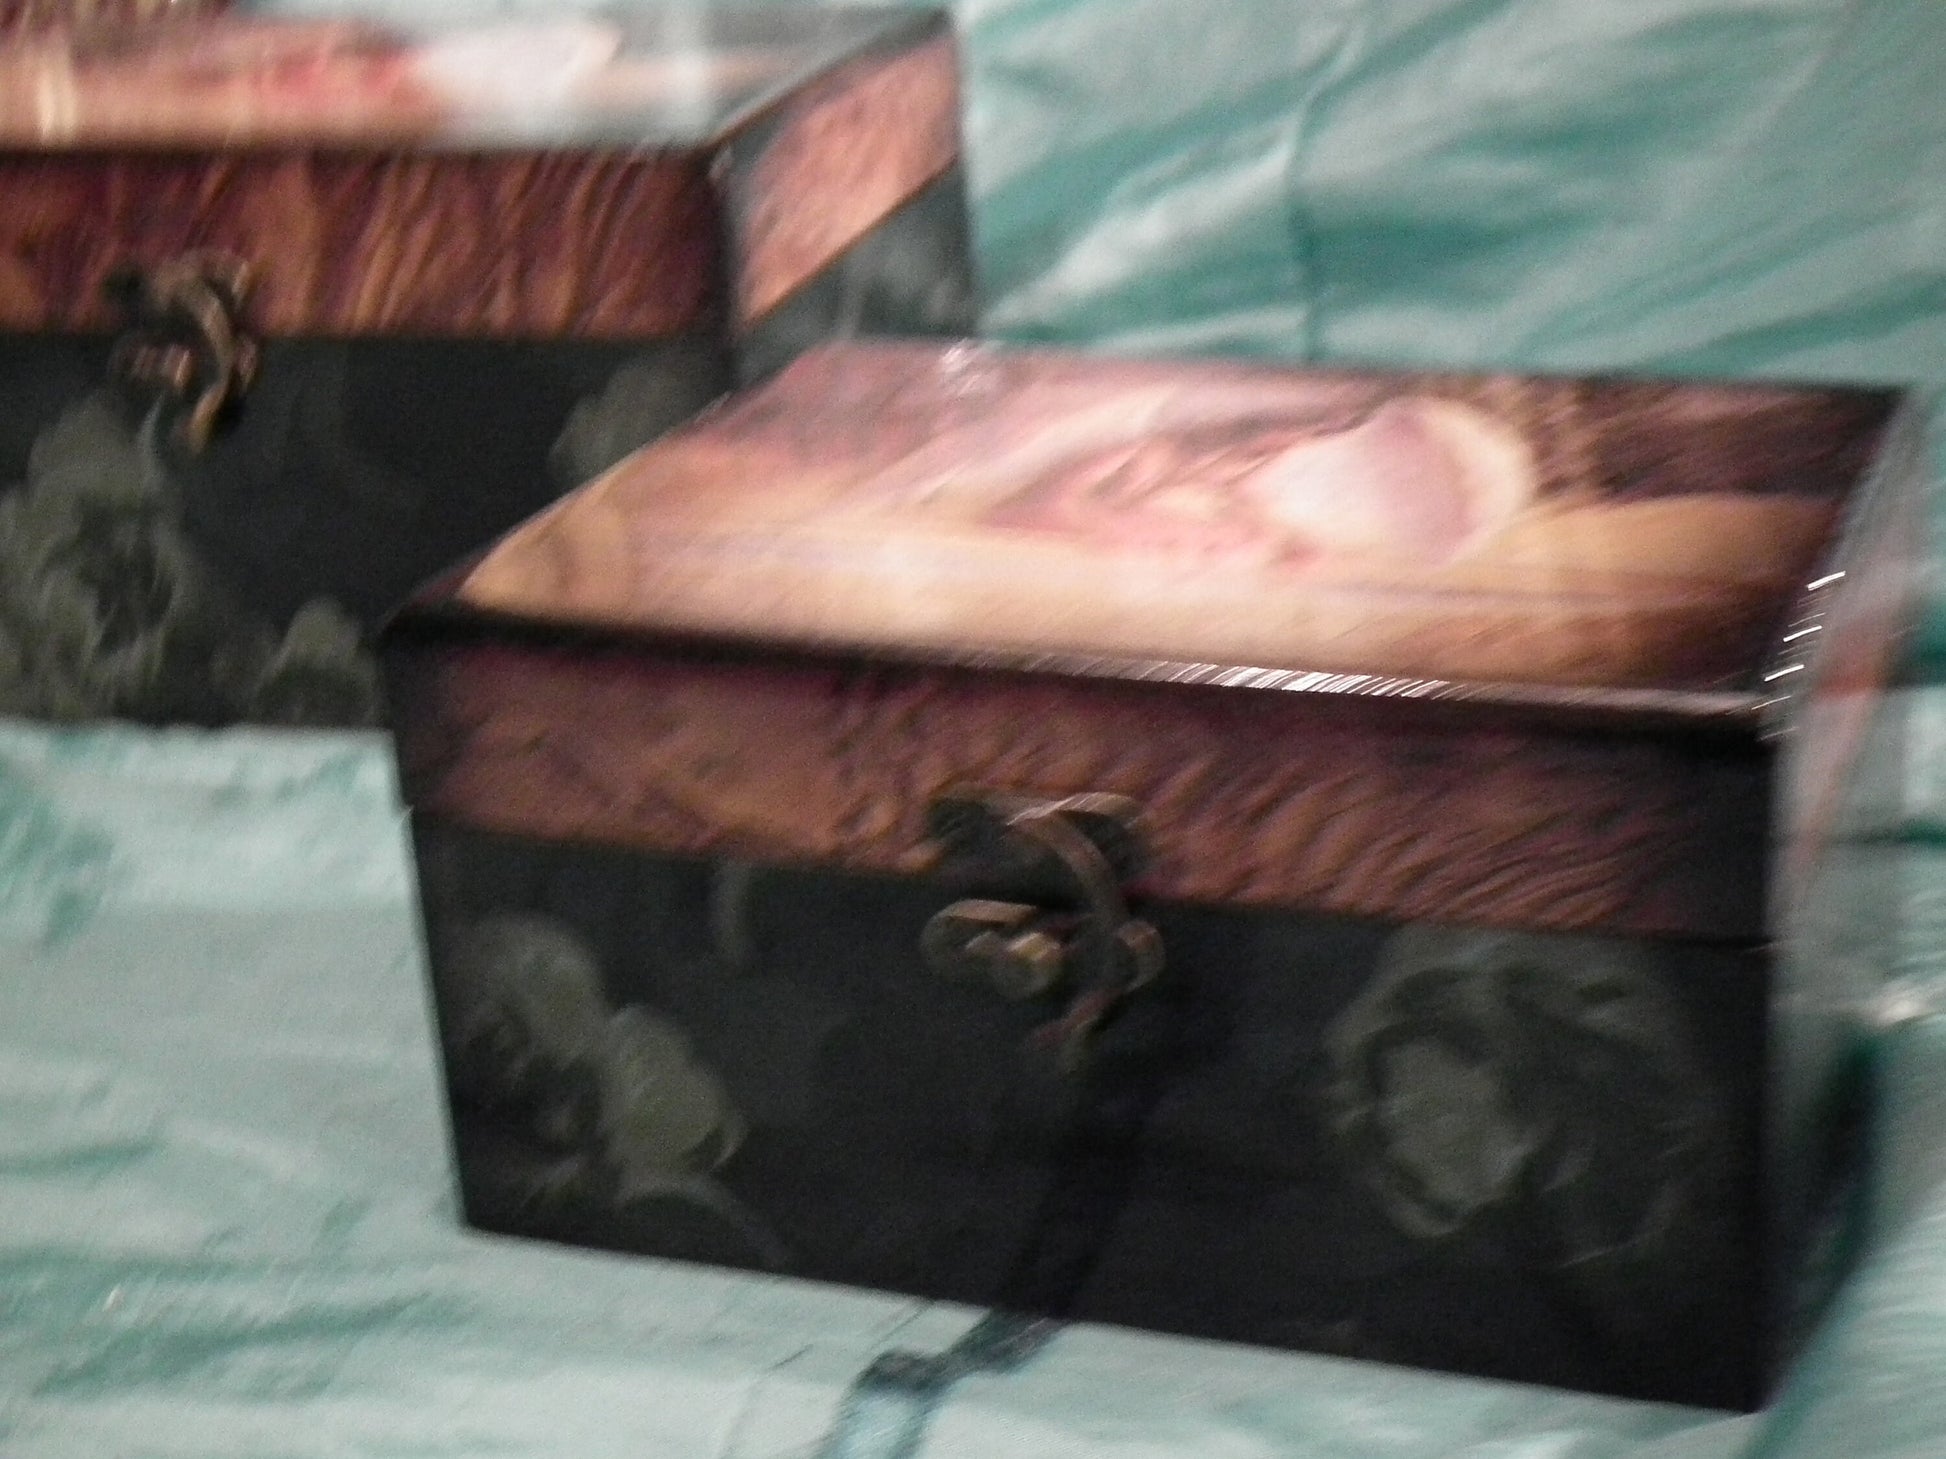 Set of2,hand-made wooden keepsake /jewellery boxes-angel design.perfect gift item,stunning quality & finish Wonkey Donkey Bazaar